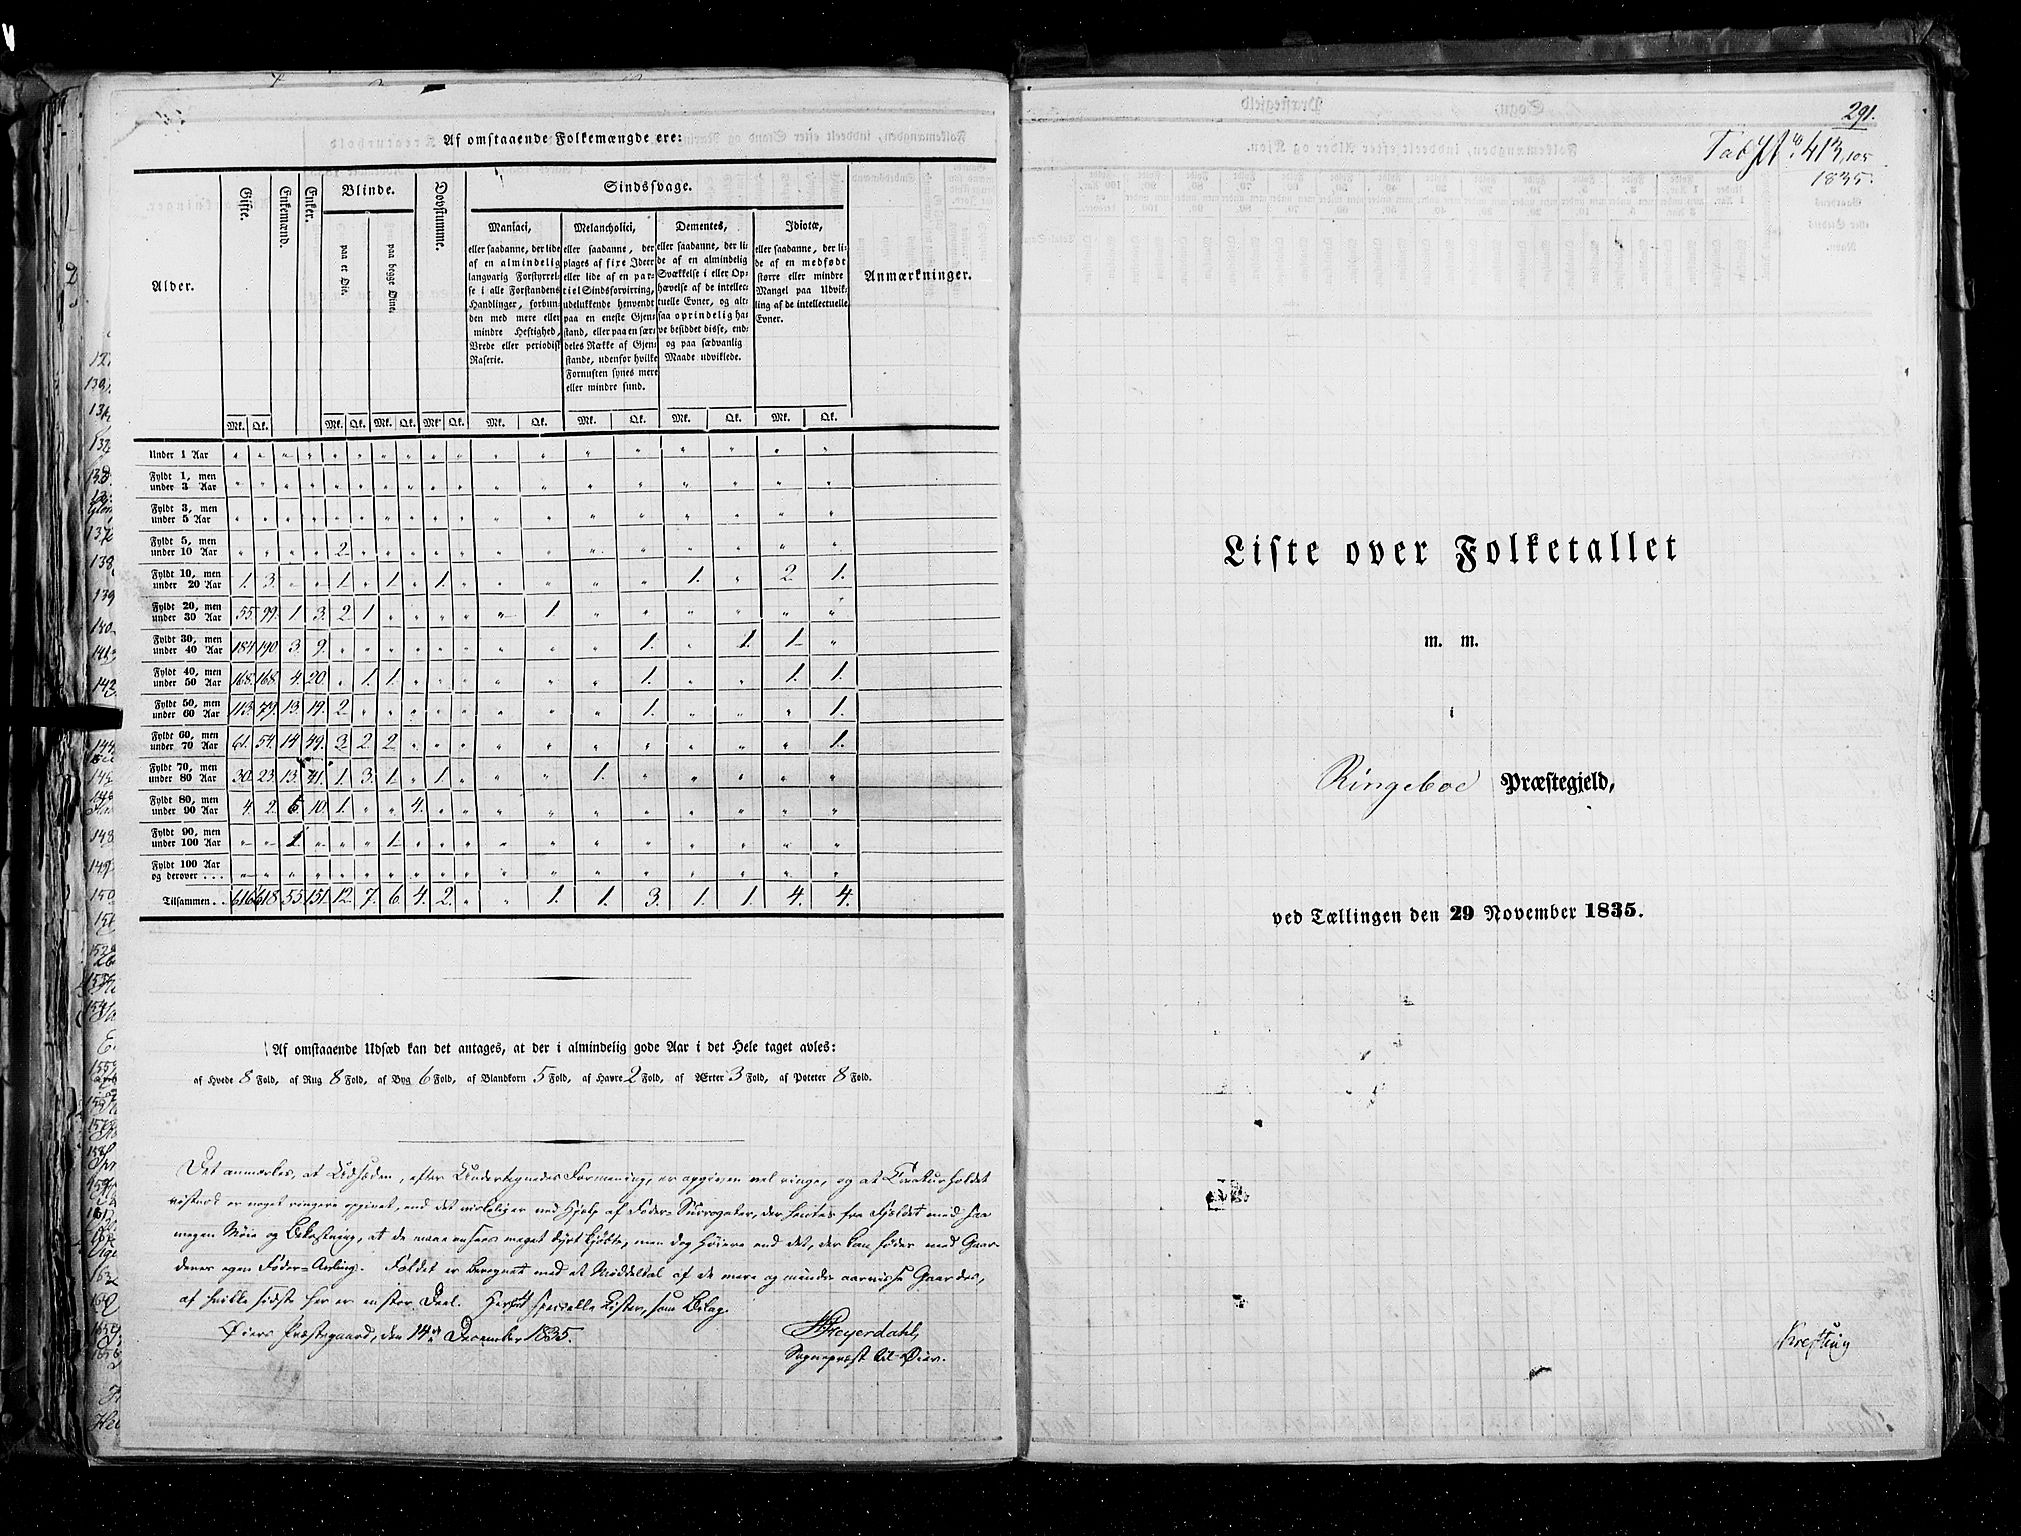 RA, Census 1835, vol. 3: Hedemarken amt og Kristians amt, 1835, p. 291